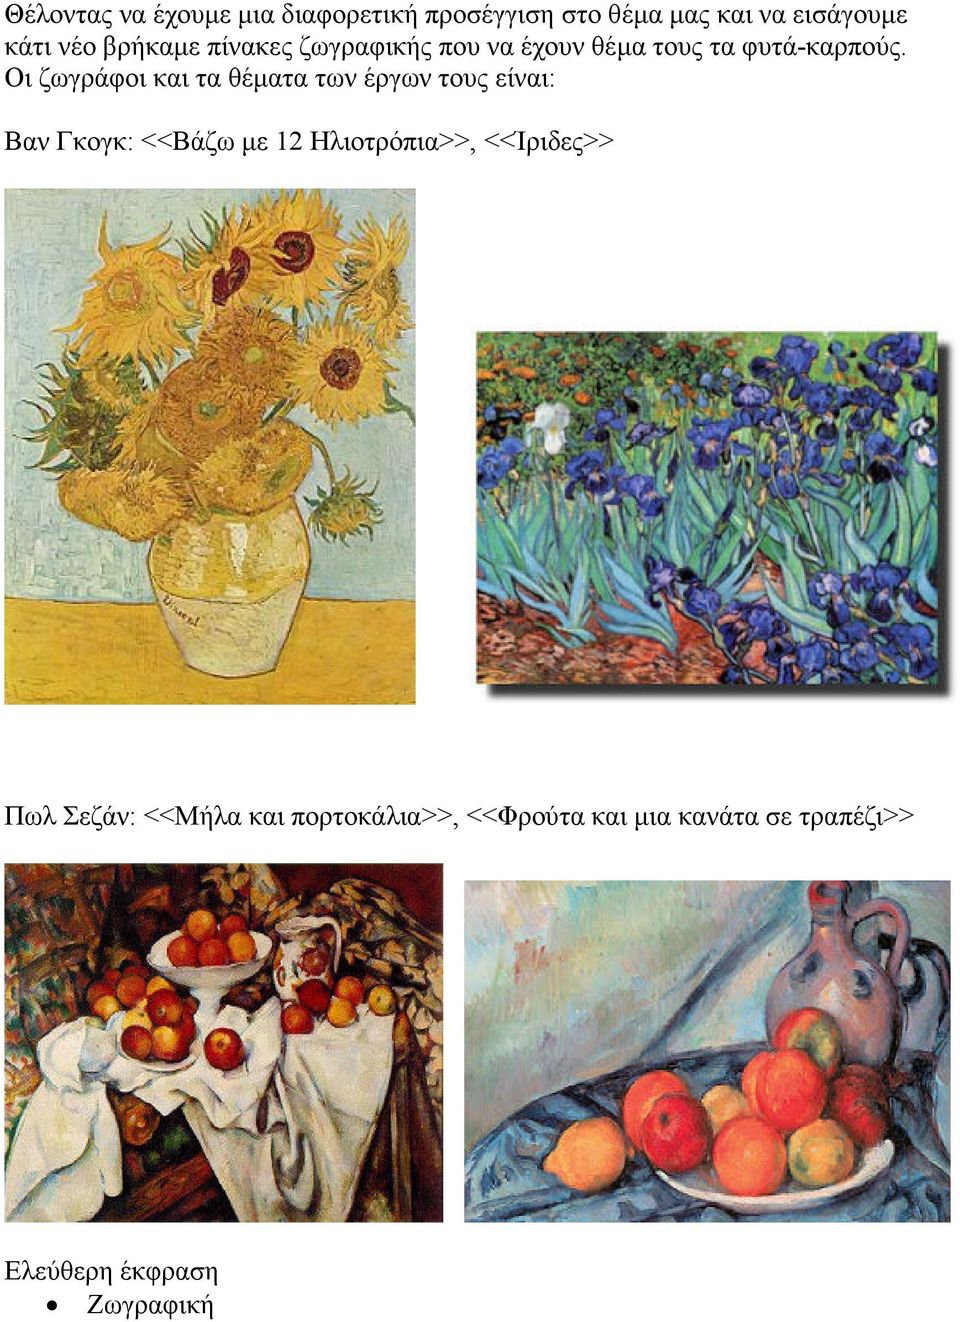 Οι ζωγράφοι και τα θέµατα των έργων τους είναι: Βαν Γκογκ: <<Βάζω µε 12 Ηλιοτρόπια>>,